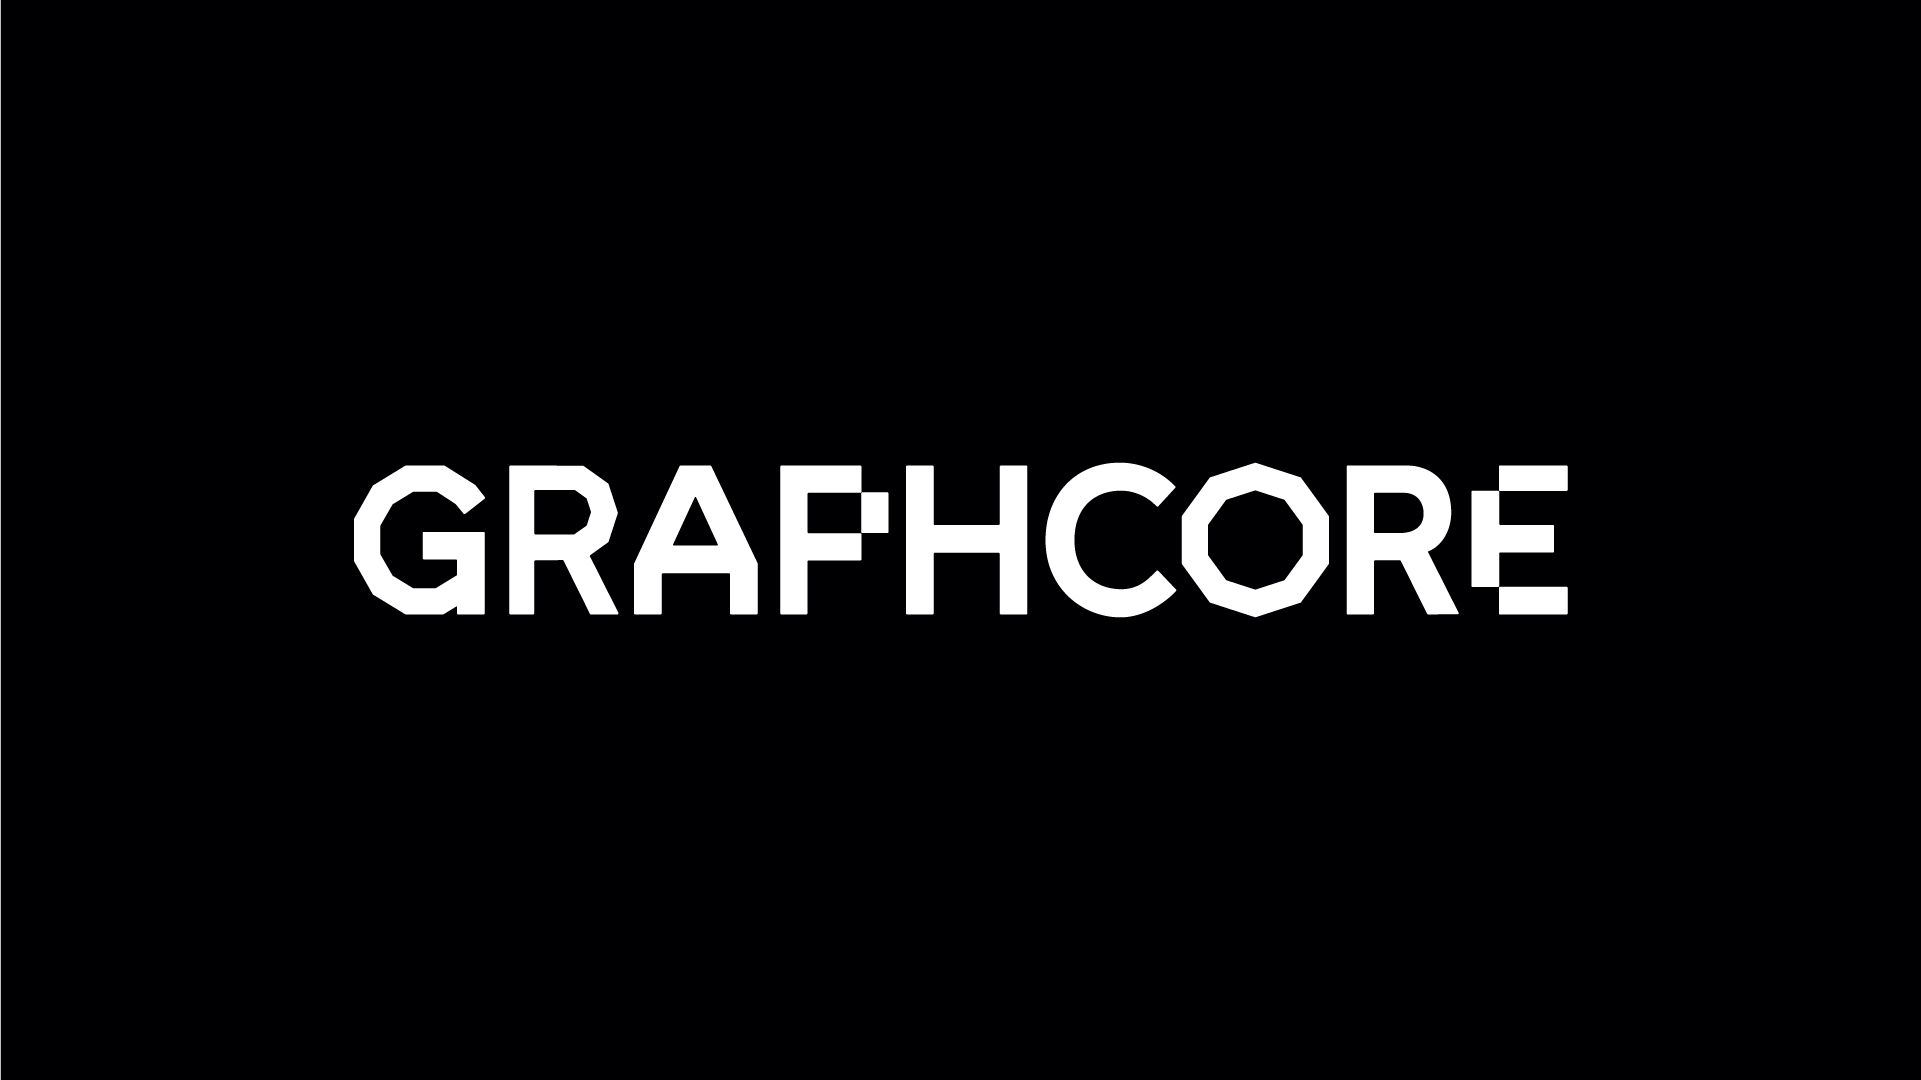 人工智能芯片技术公司Graphcore新品牌设计-深圳科技品牌设计